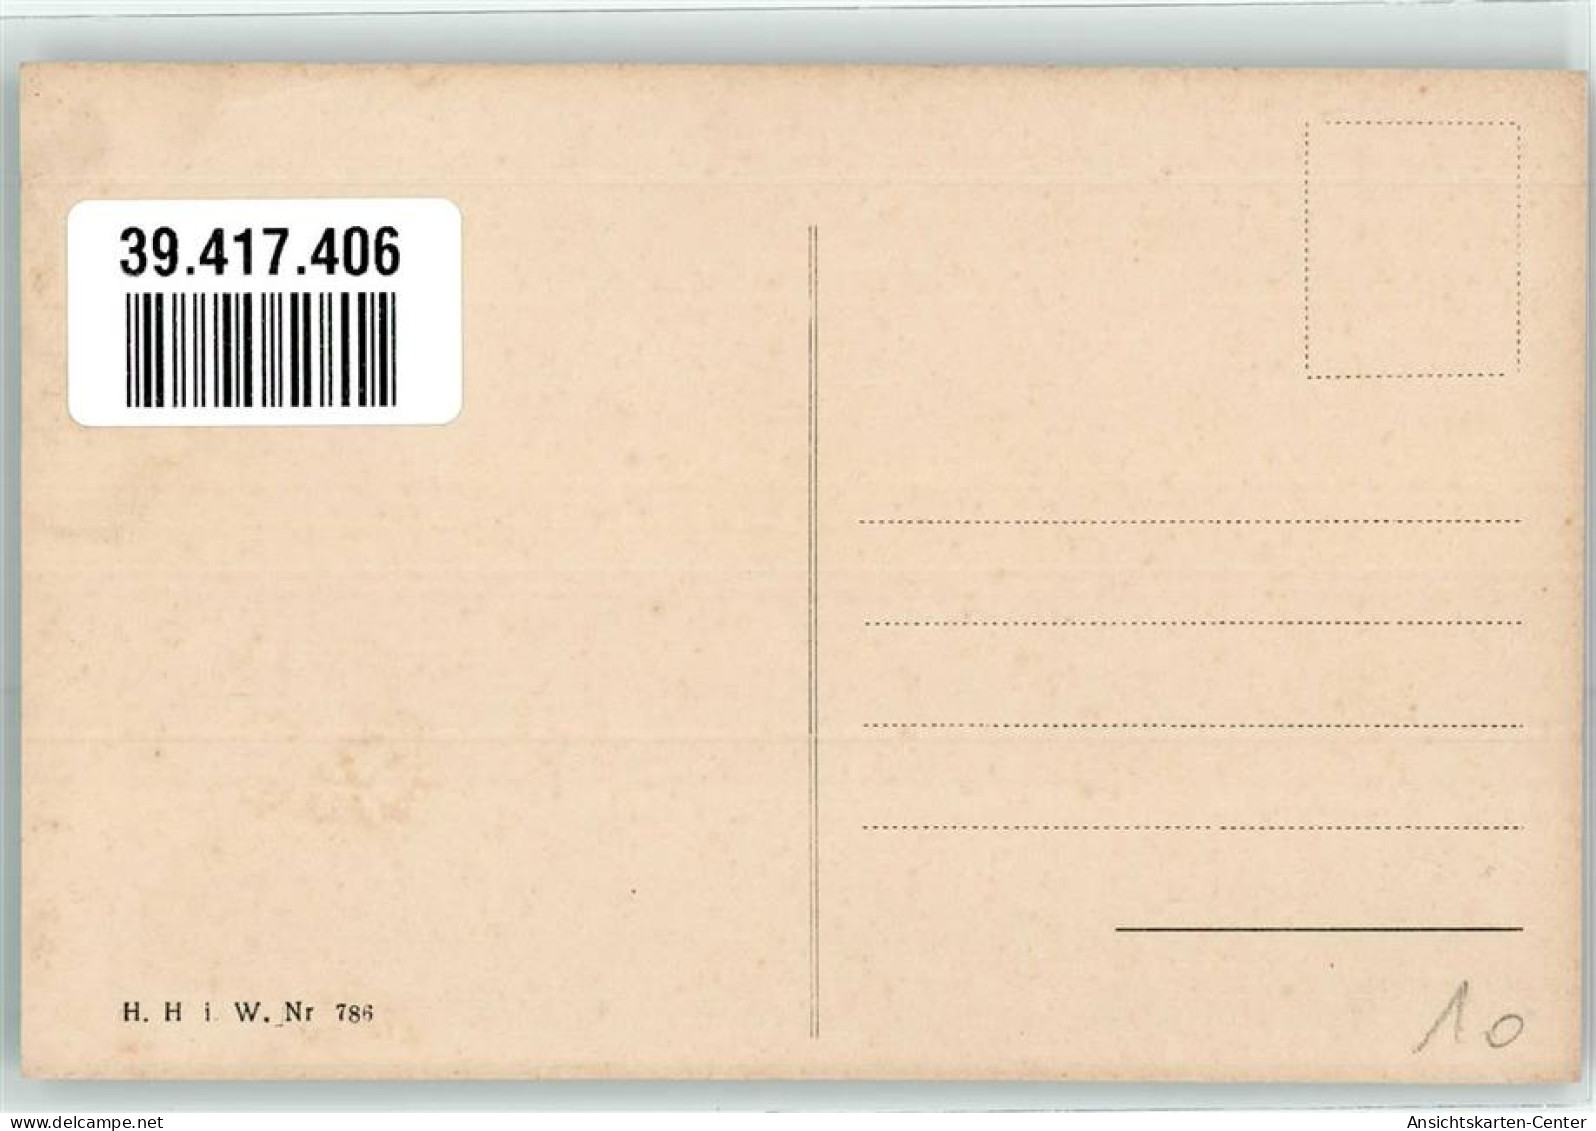 39417406 - Maedchen Kleeblaetter Brief H.H.i.W.Nr 786 - New Year